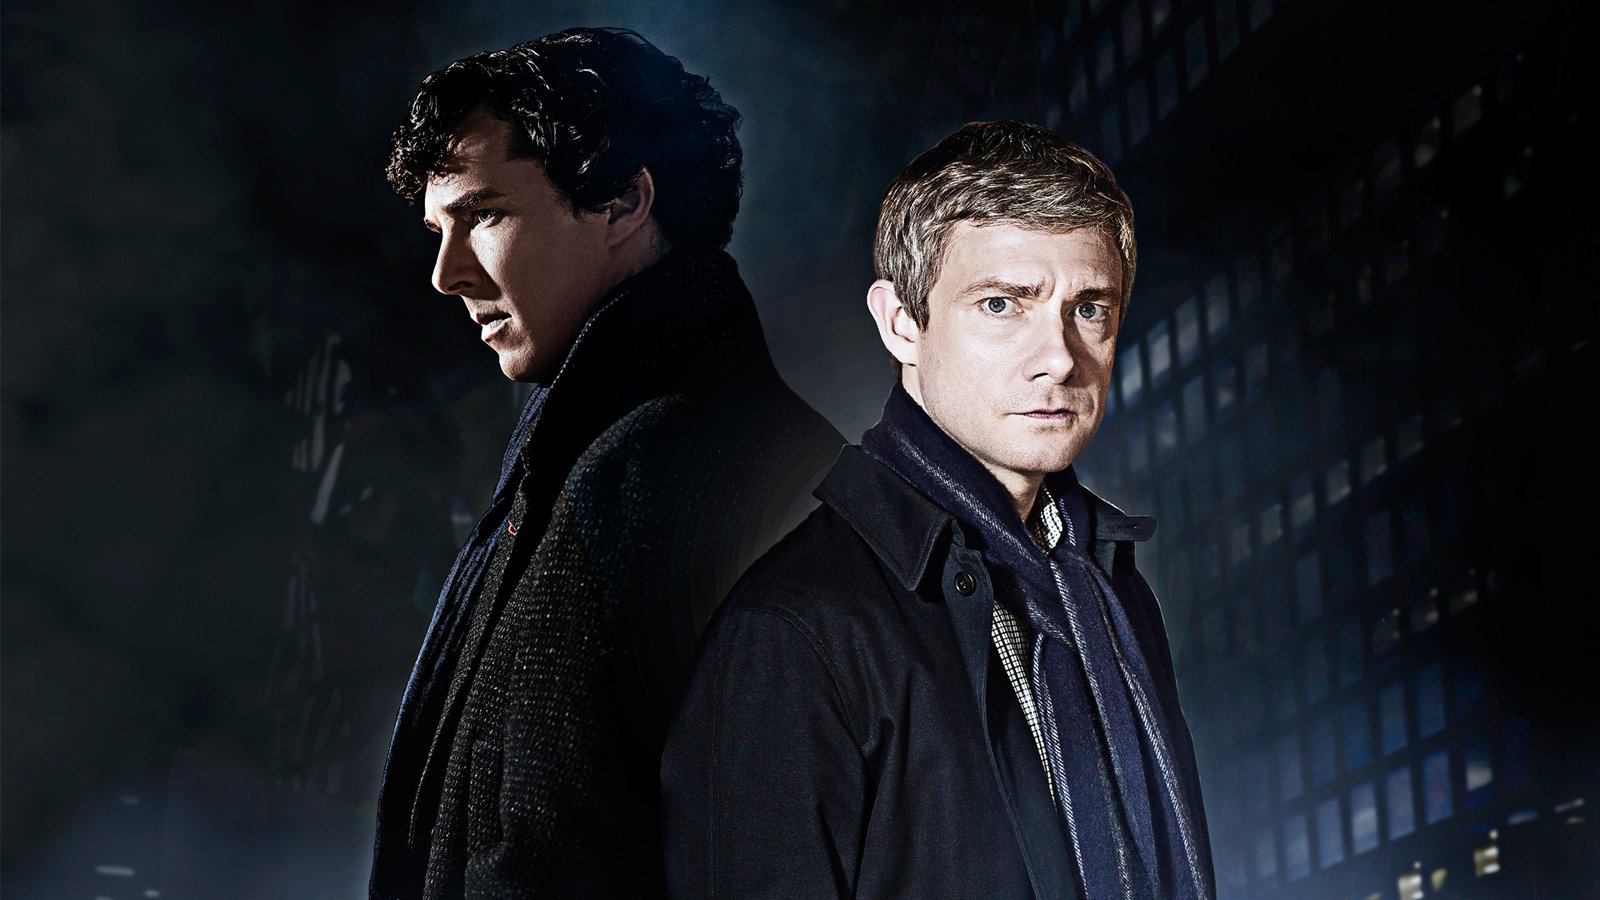 Шерлок / Sherlock